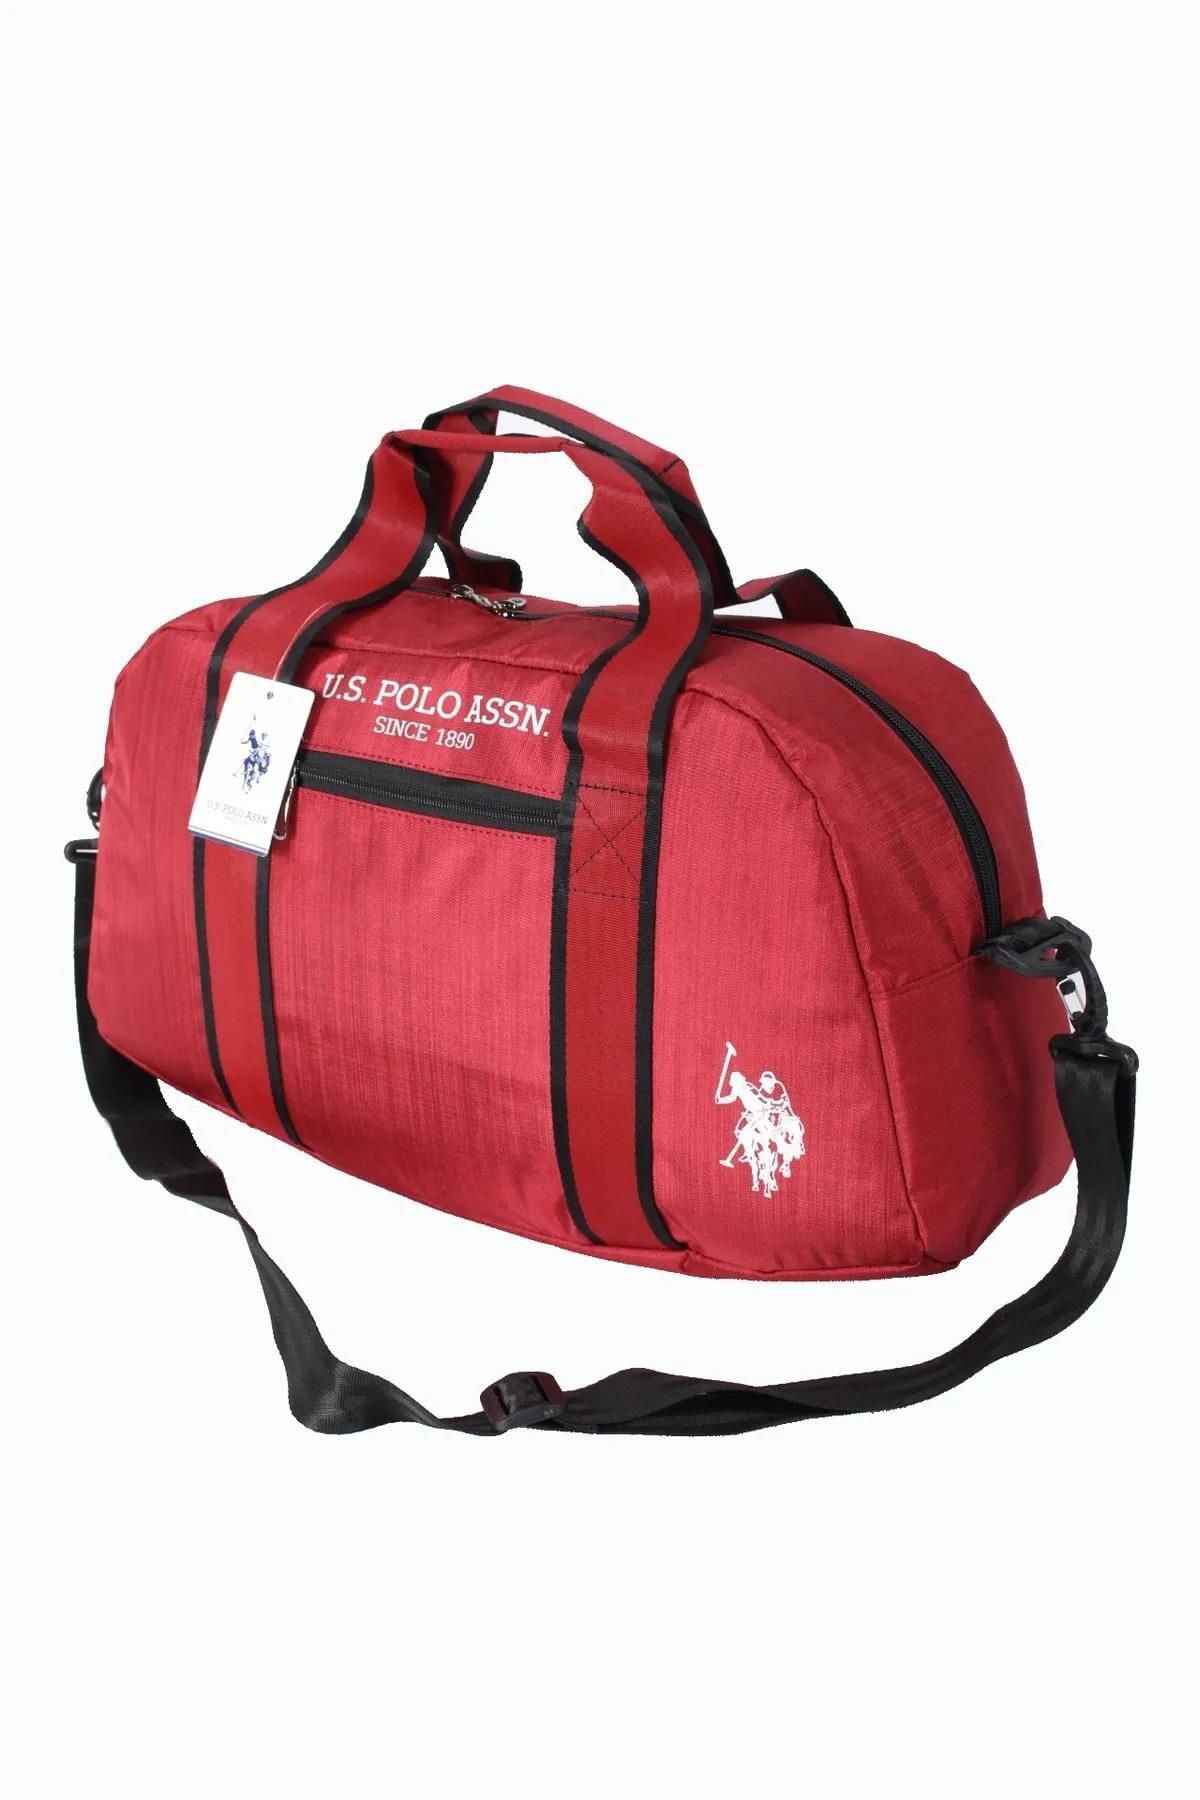 U.S. Polo Assn. Plduf23820 Duffle Çanta Orta Boy-kırmızı